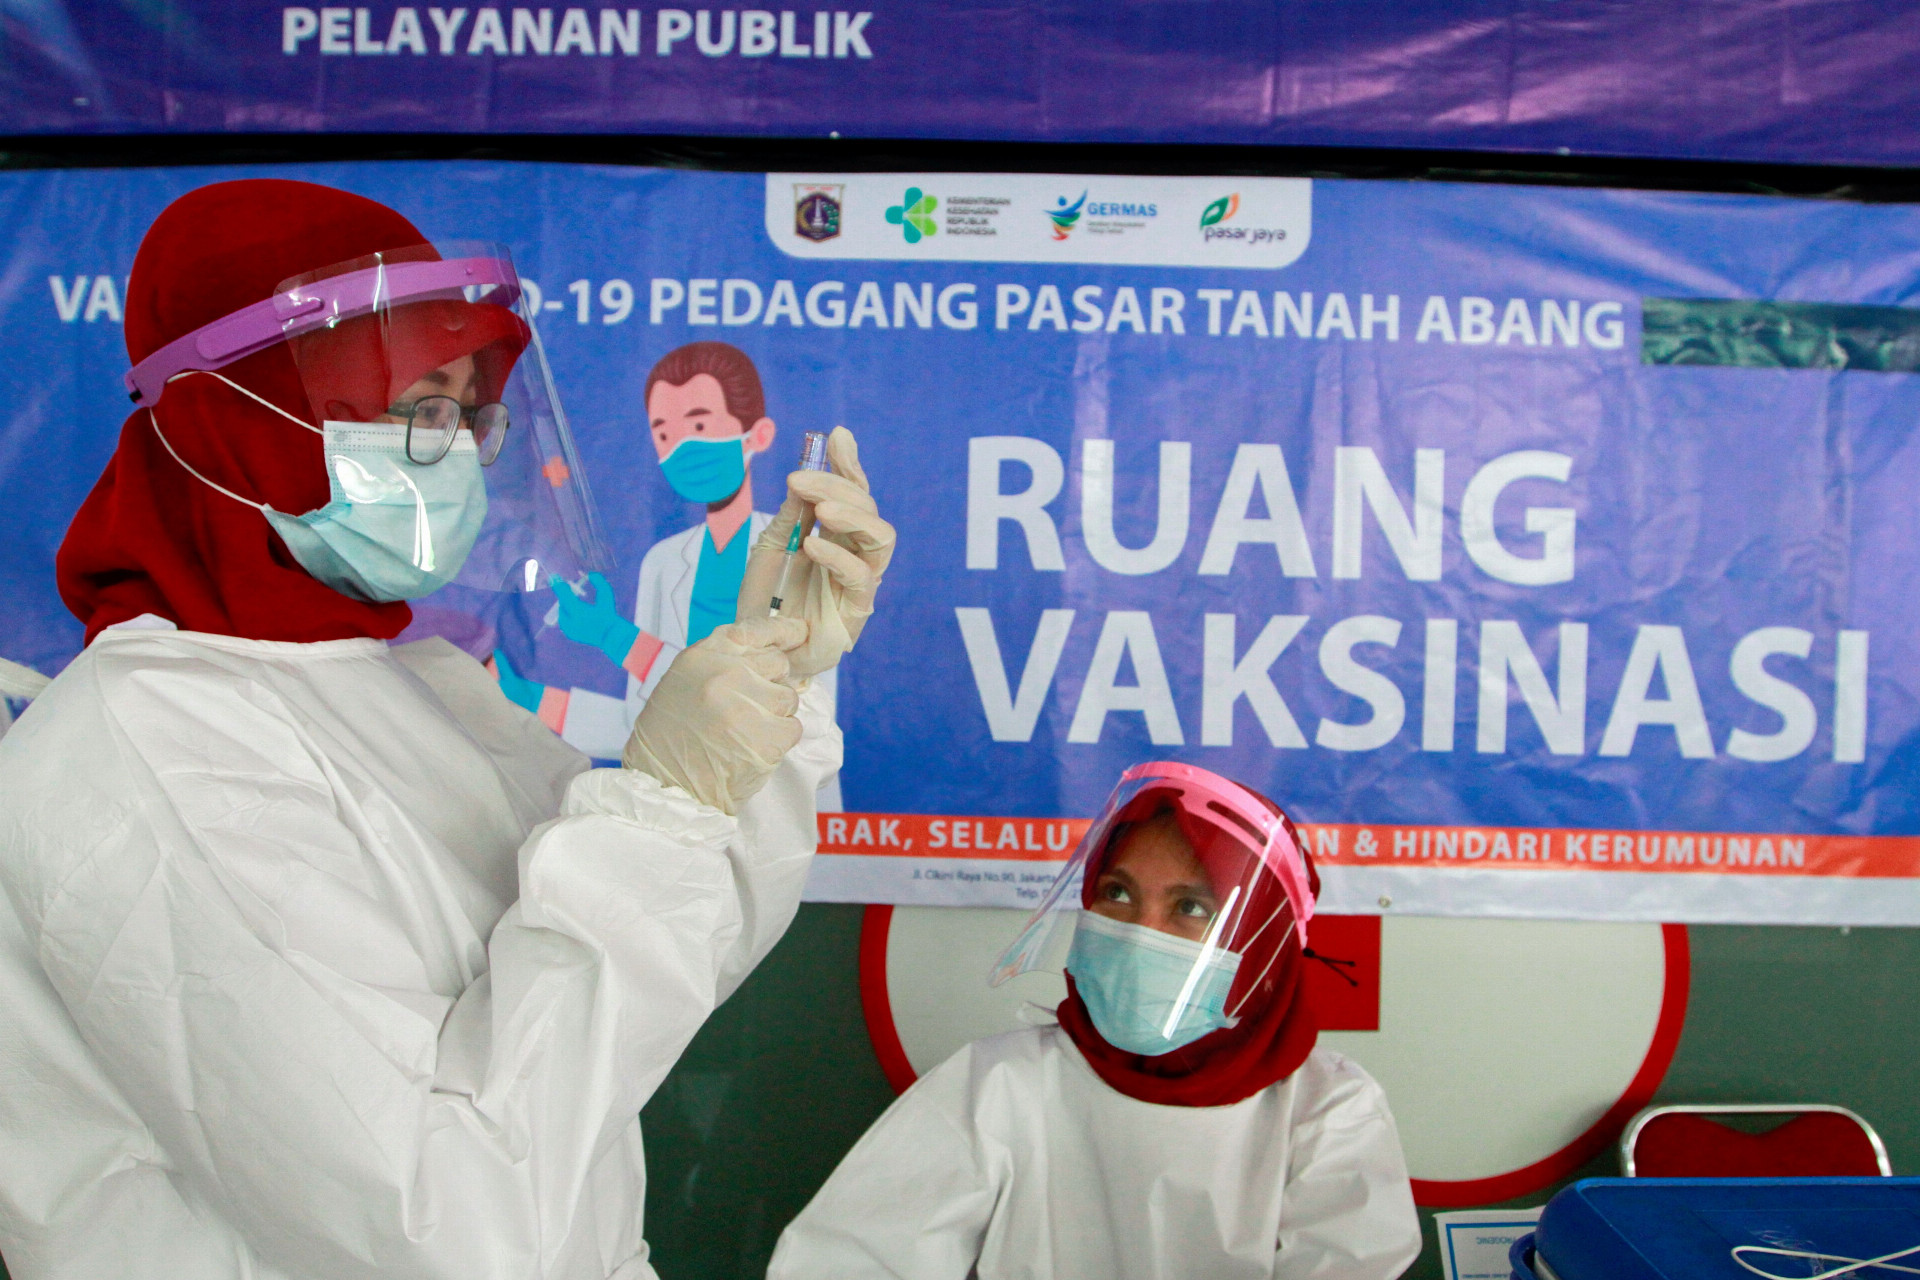 Medzi Indonézanmi, ktorí prednostne dostali vakcínu, sú aj predavači z textilného trhu Tanah Abang v Jakarte.